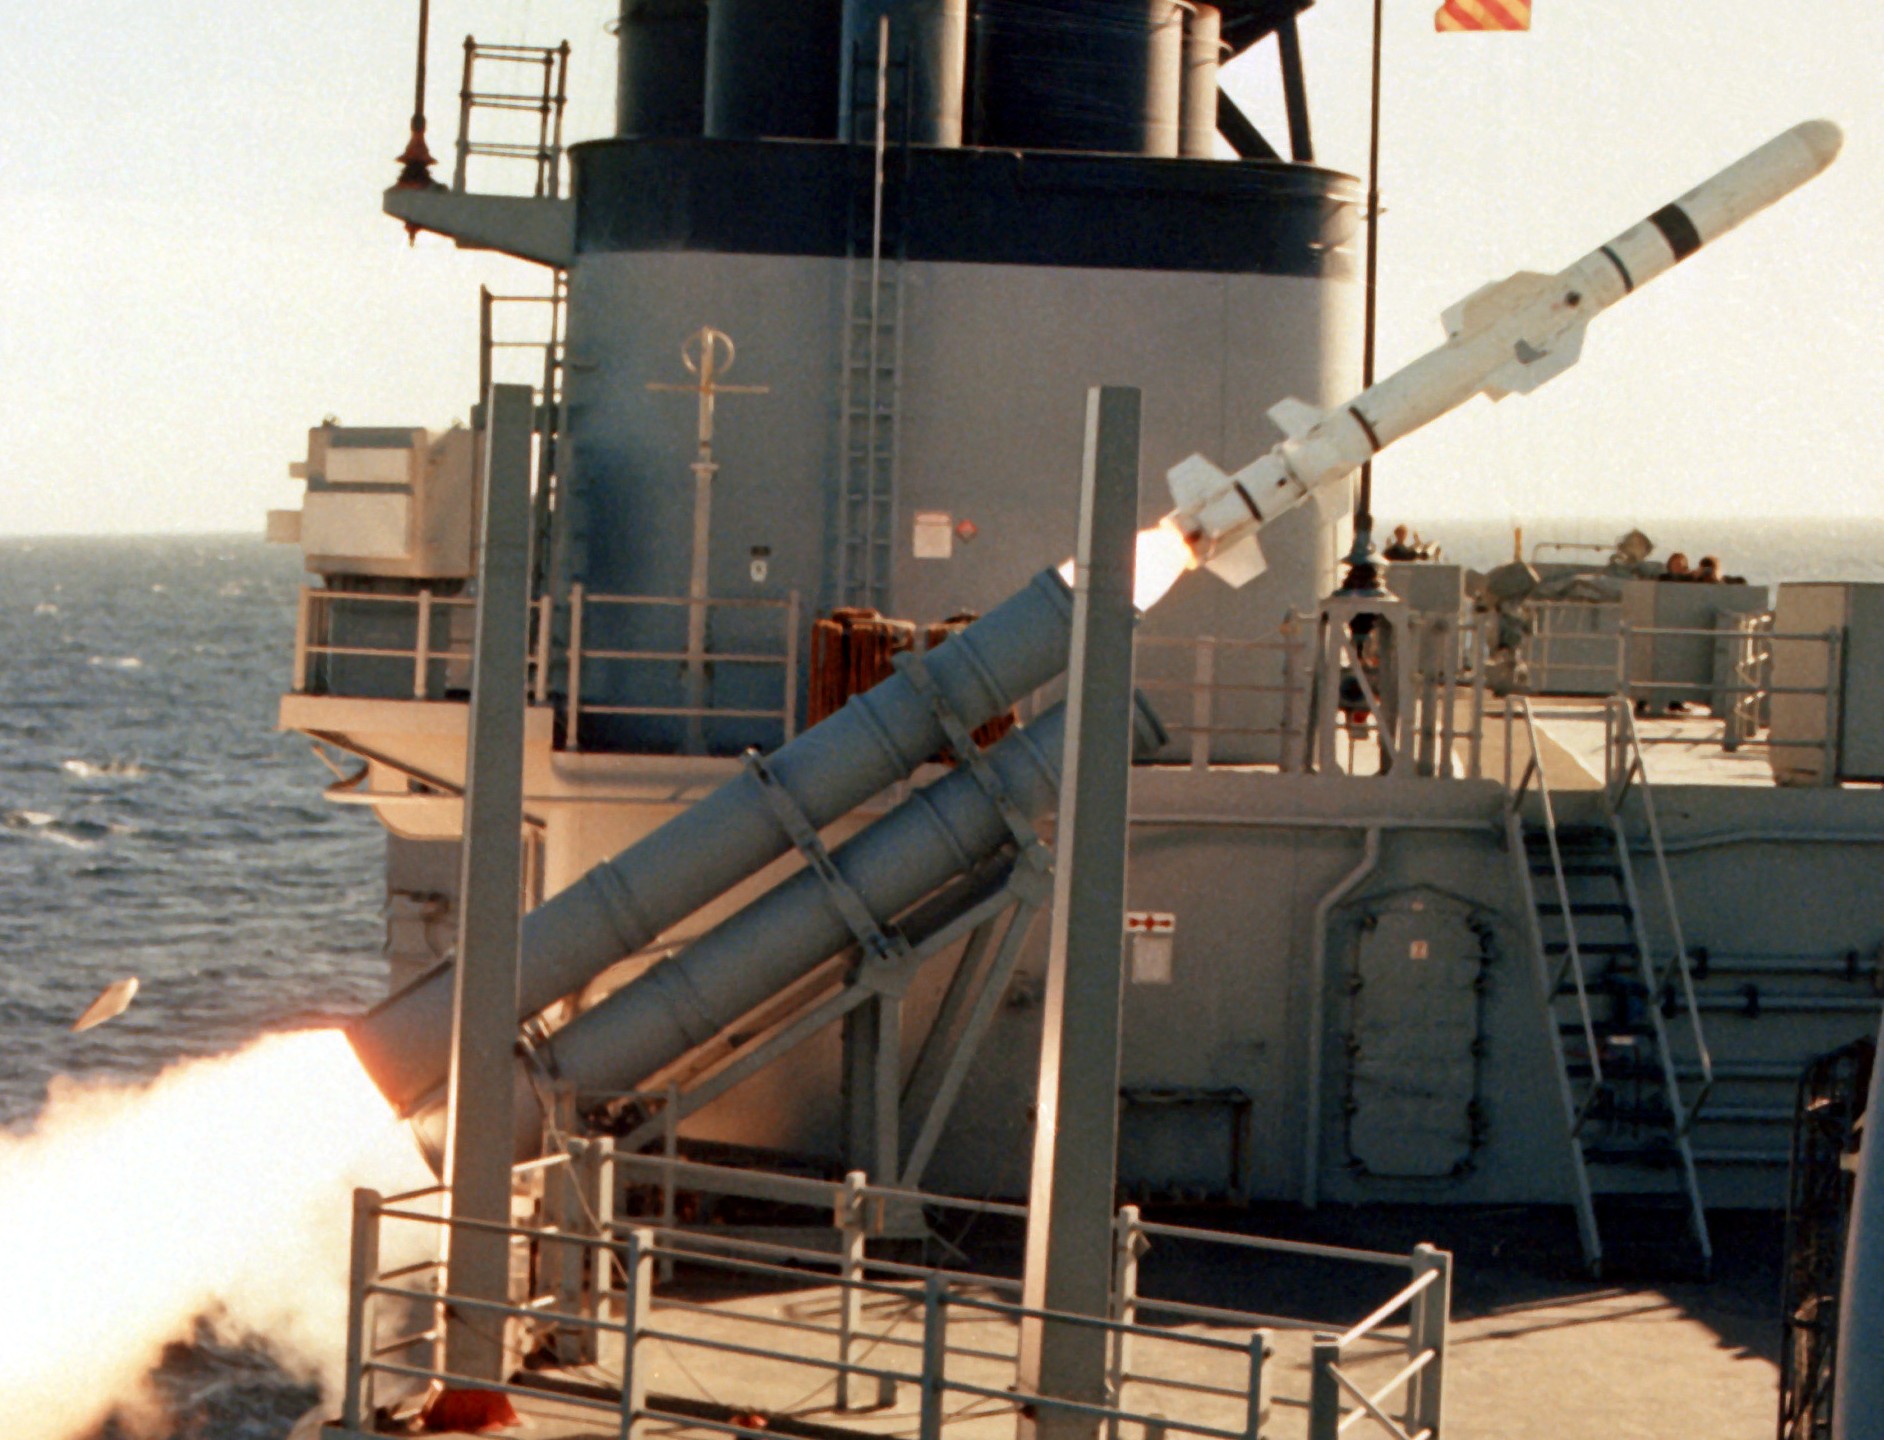 rgm-84 harpoon ssm mk-141 missile launcher spruance class destroyer 17